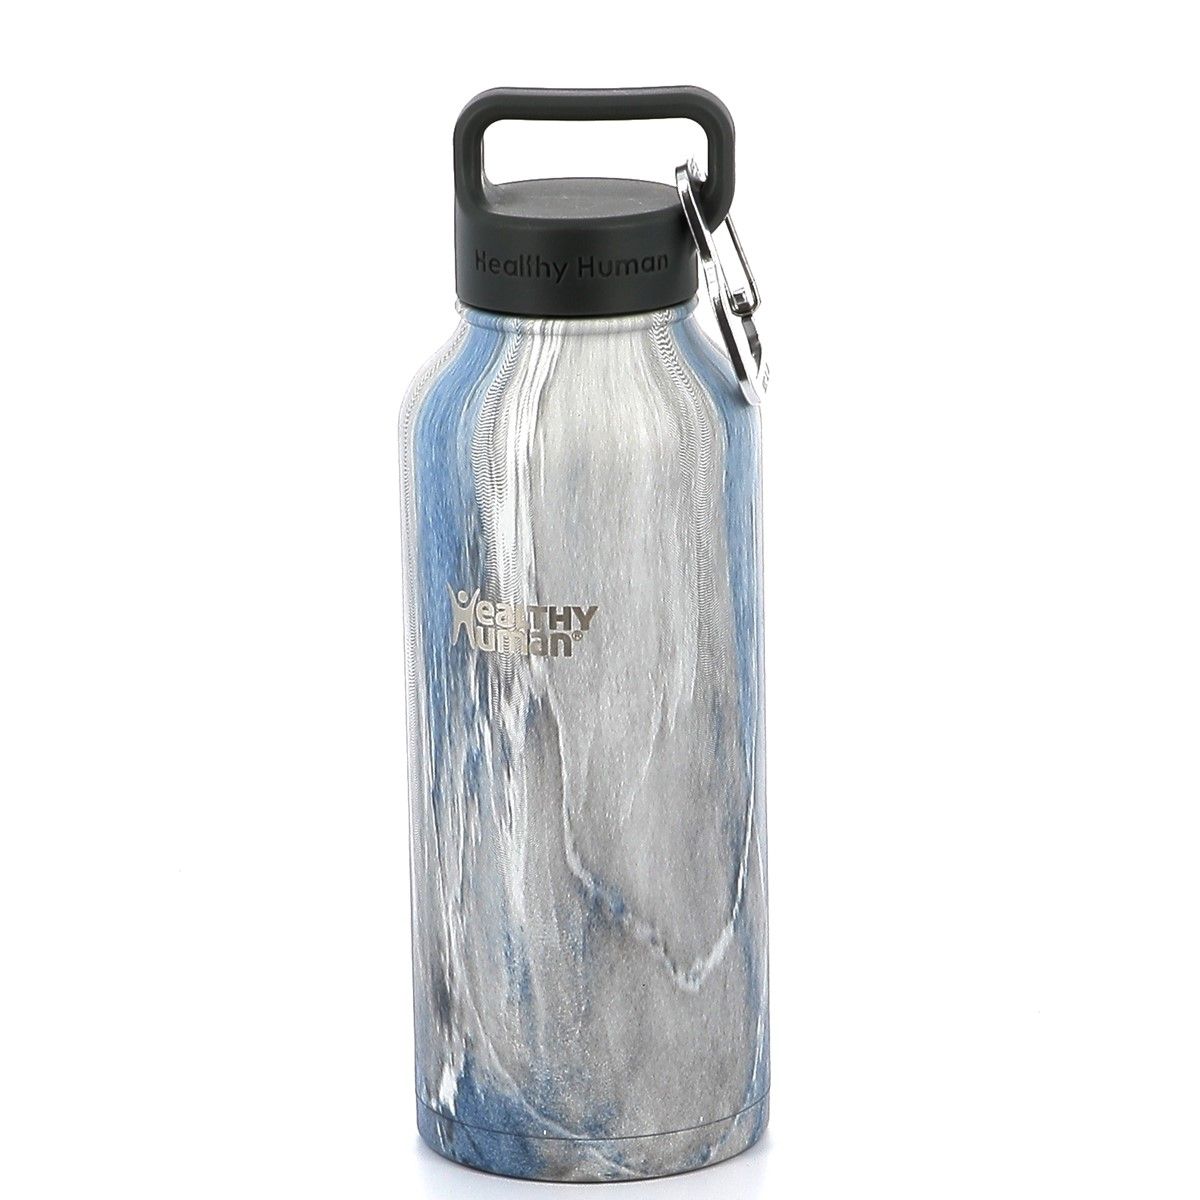 Παγούρι Θερμός Ανοξείδωτο Healthy Human Stein Bottle 32oz/946ml Χρώματος Γκρι- Μπλε HH-SOB27